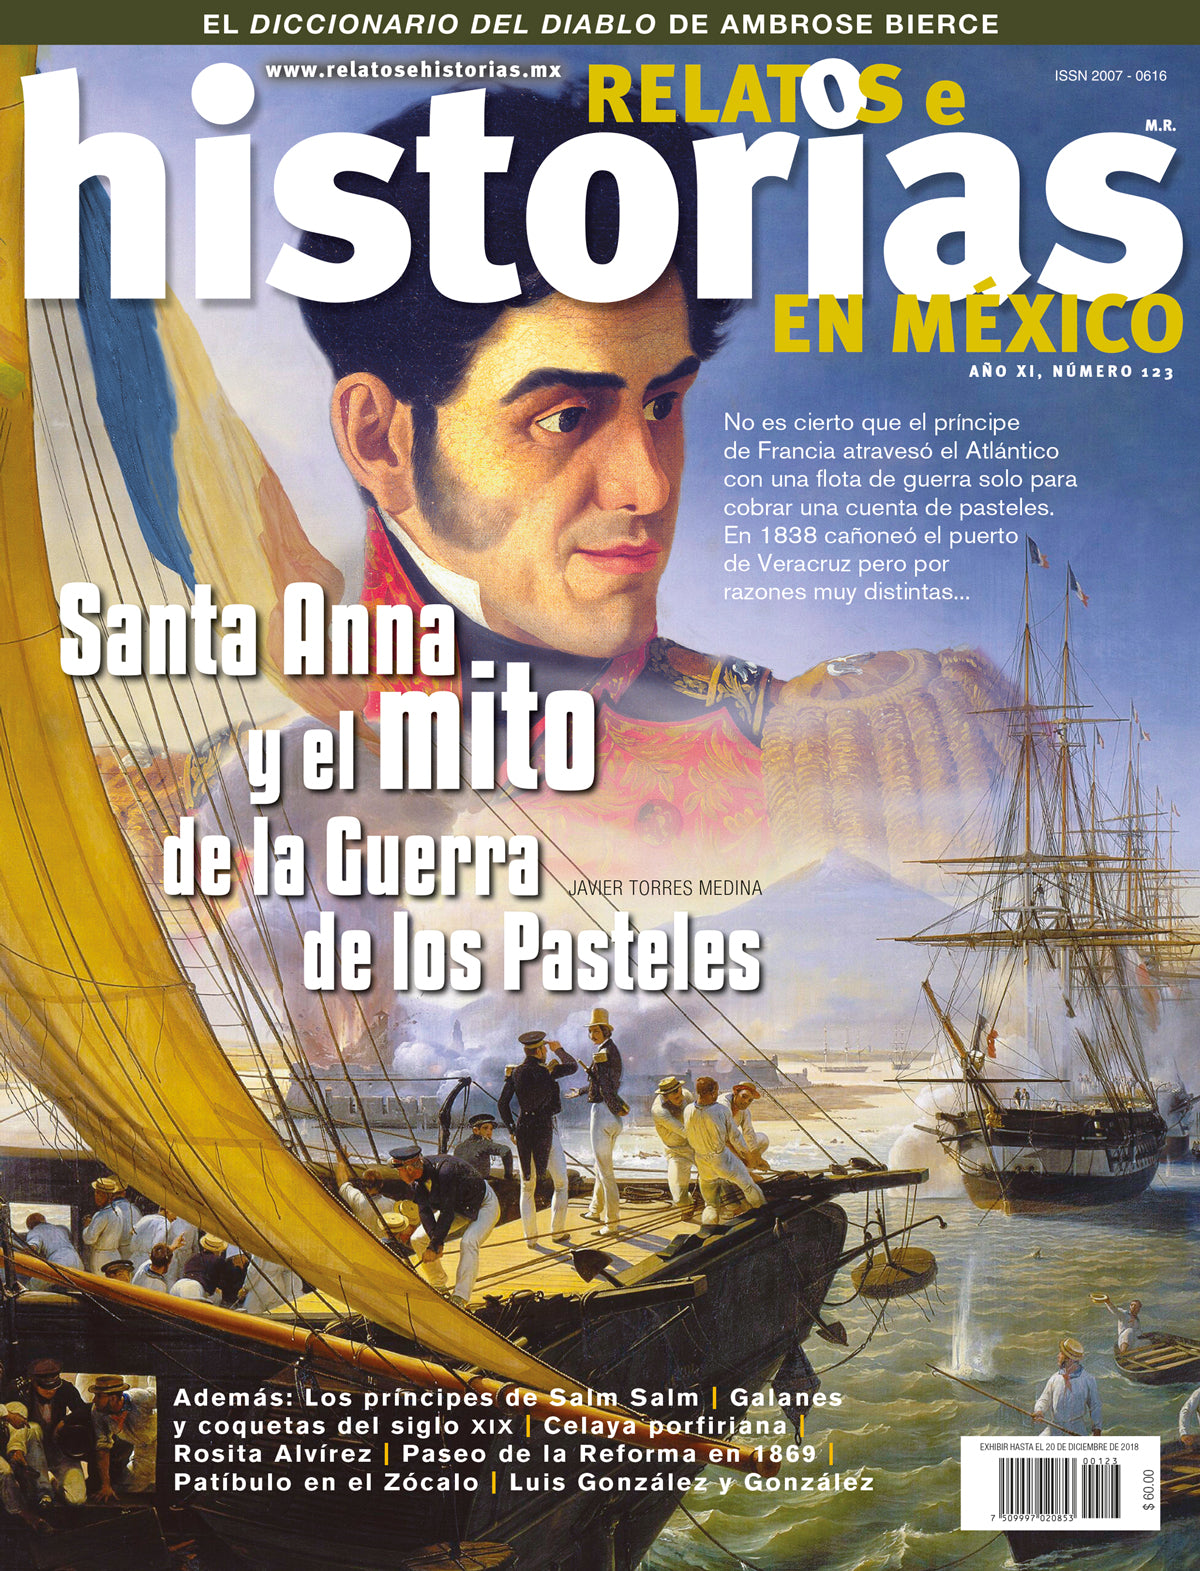 Santa Anna y el mito de la Guerra de los Pasteles